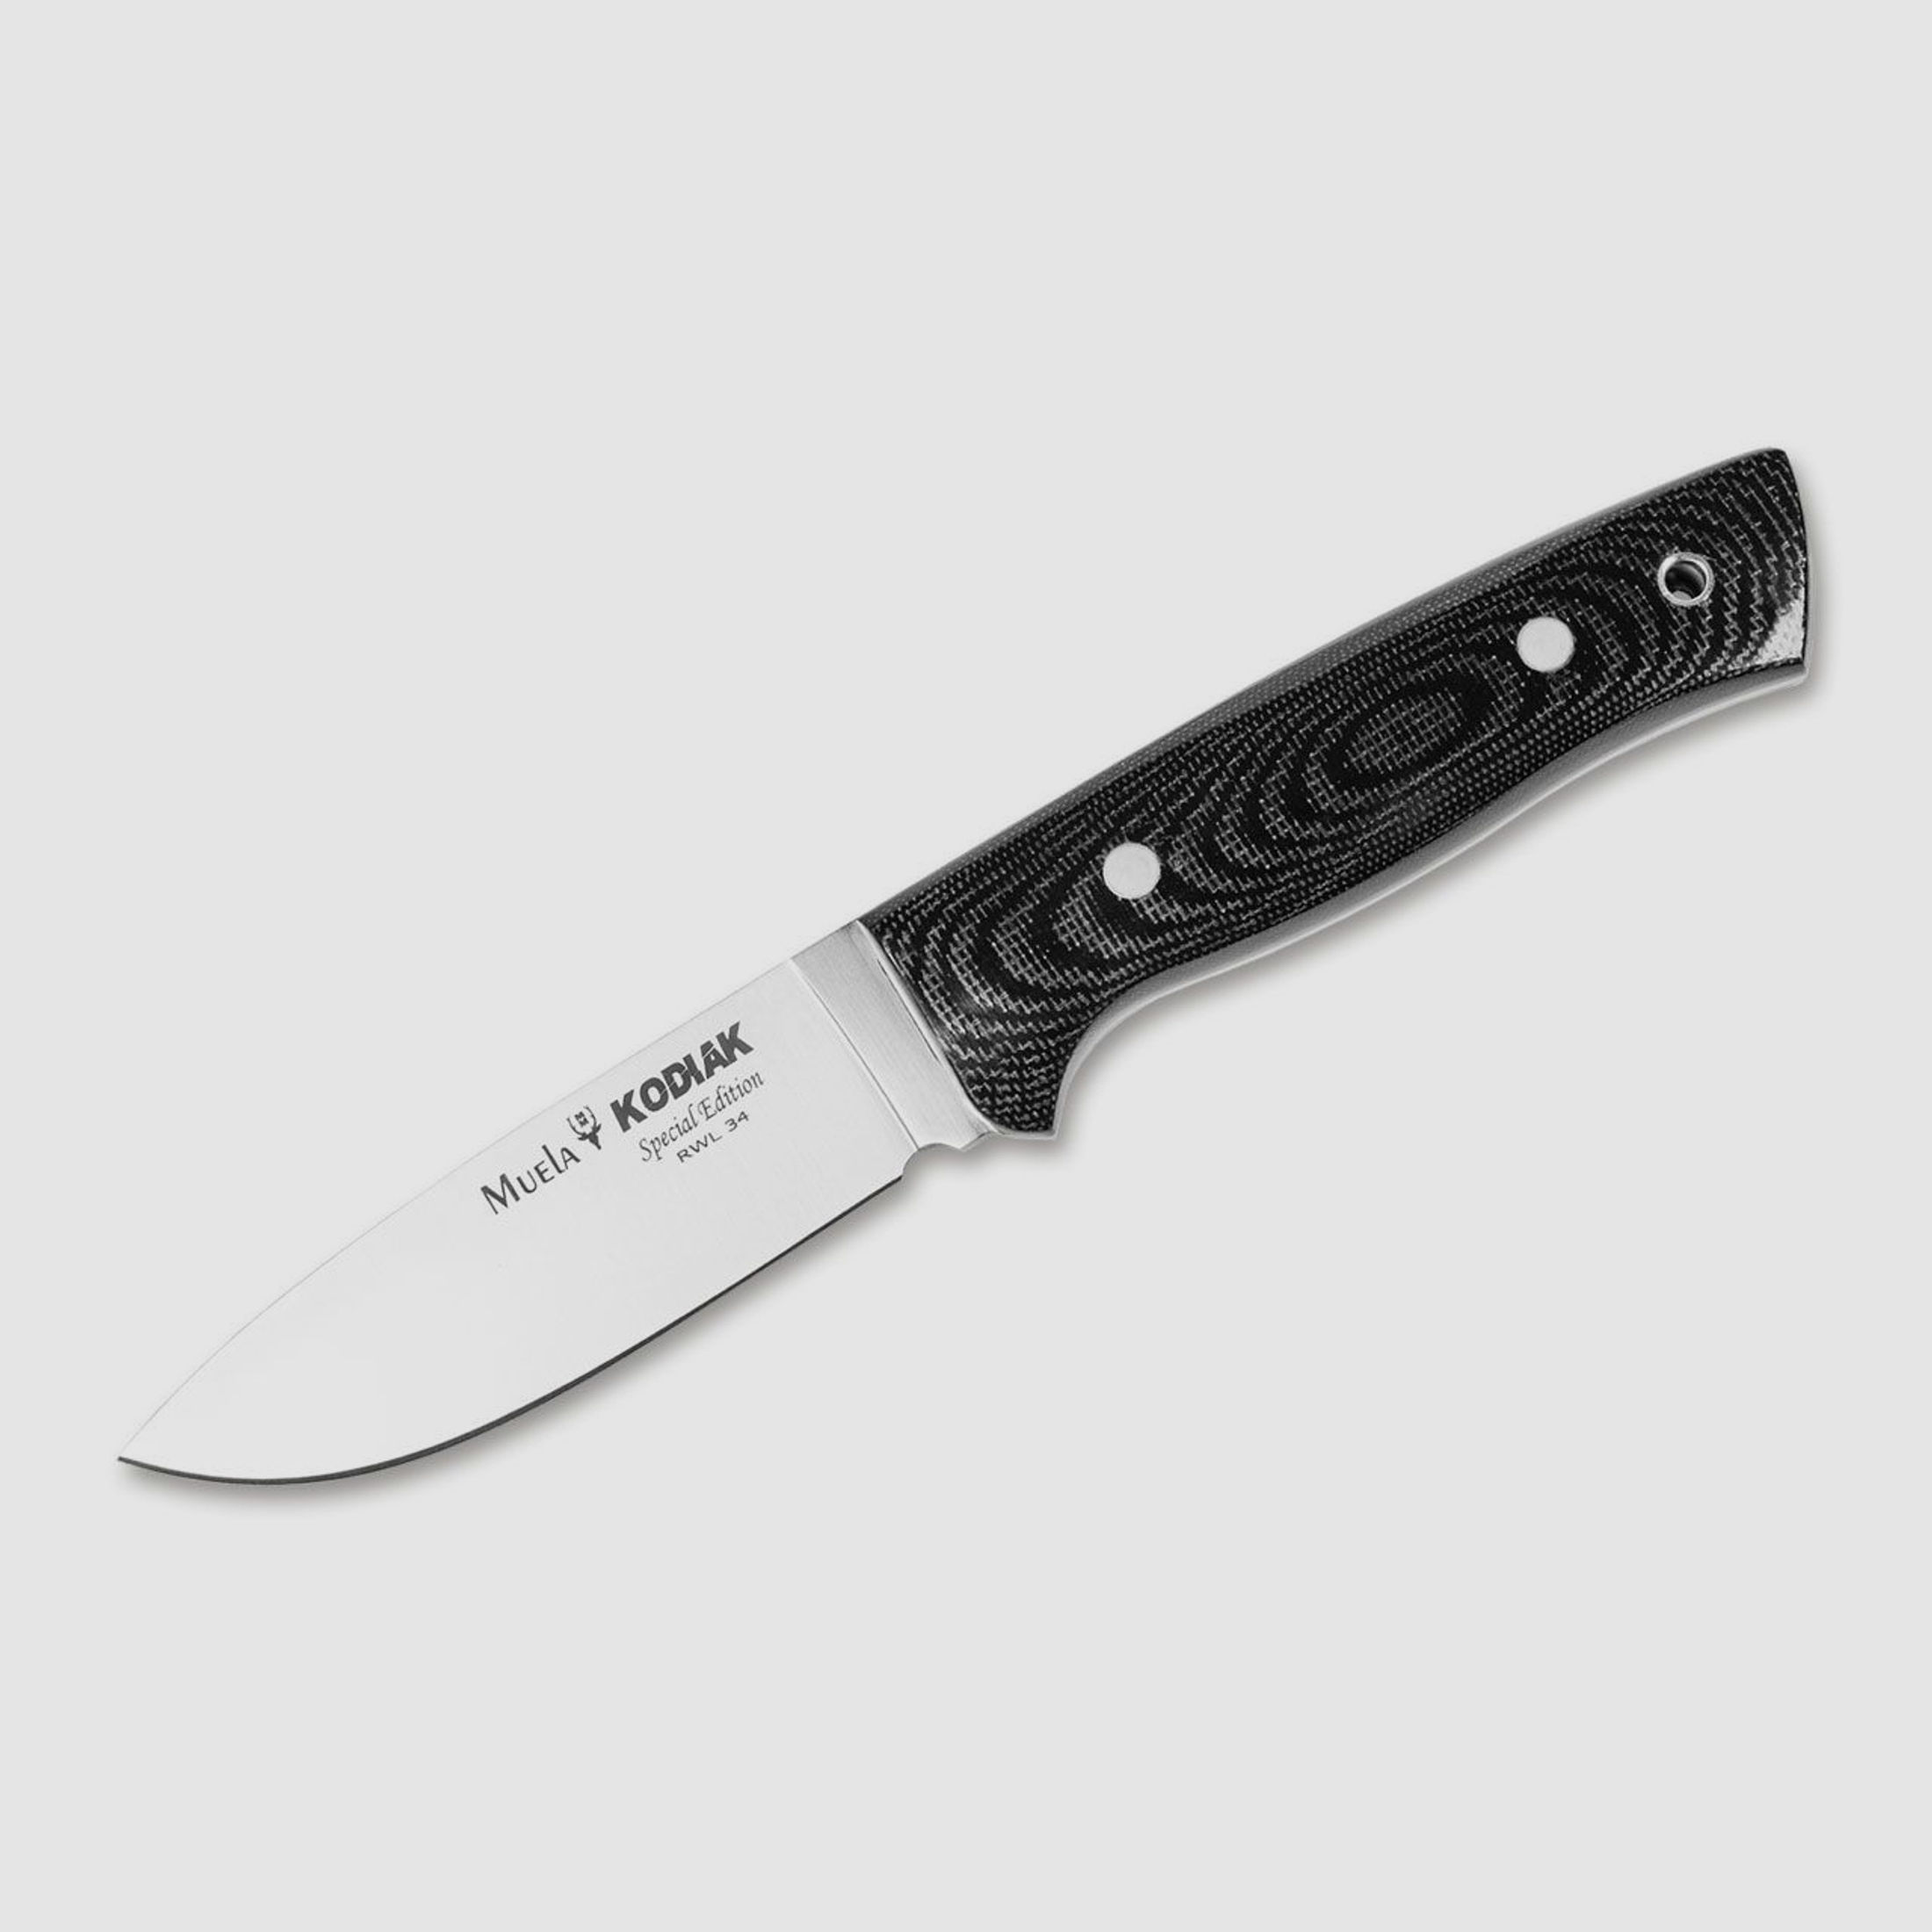 Messer Kodiak RWL 34 mit hochwertiger Lederscheide und Geschenk-Box